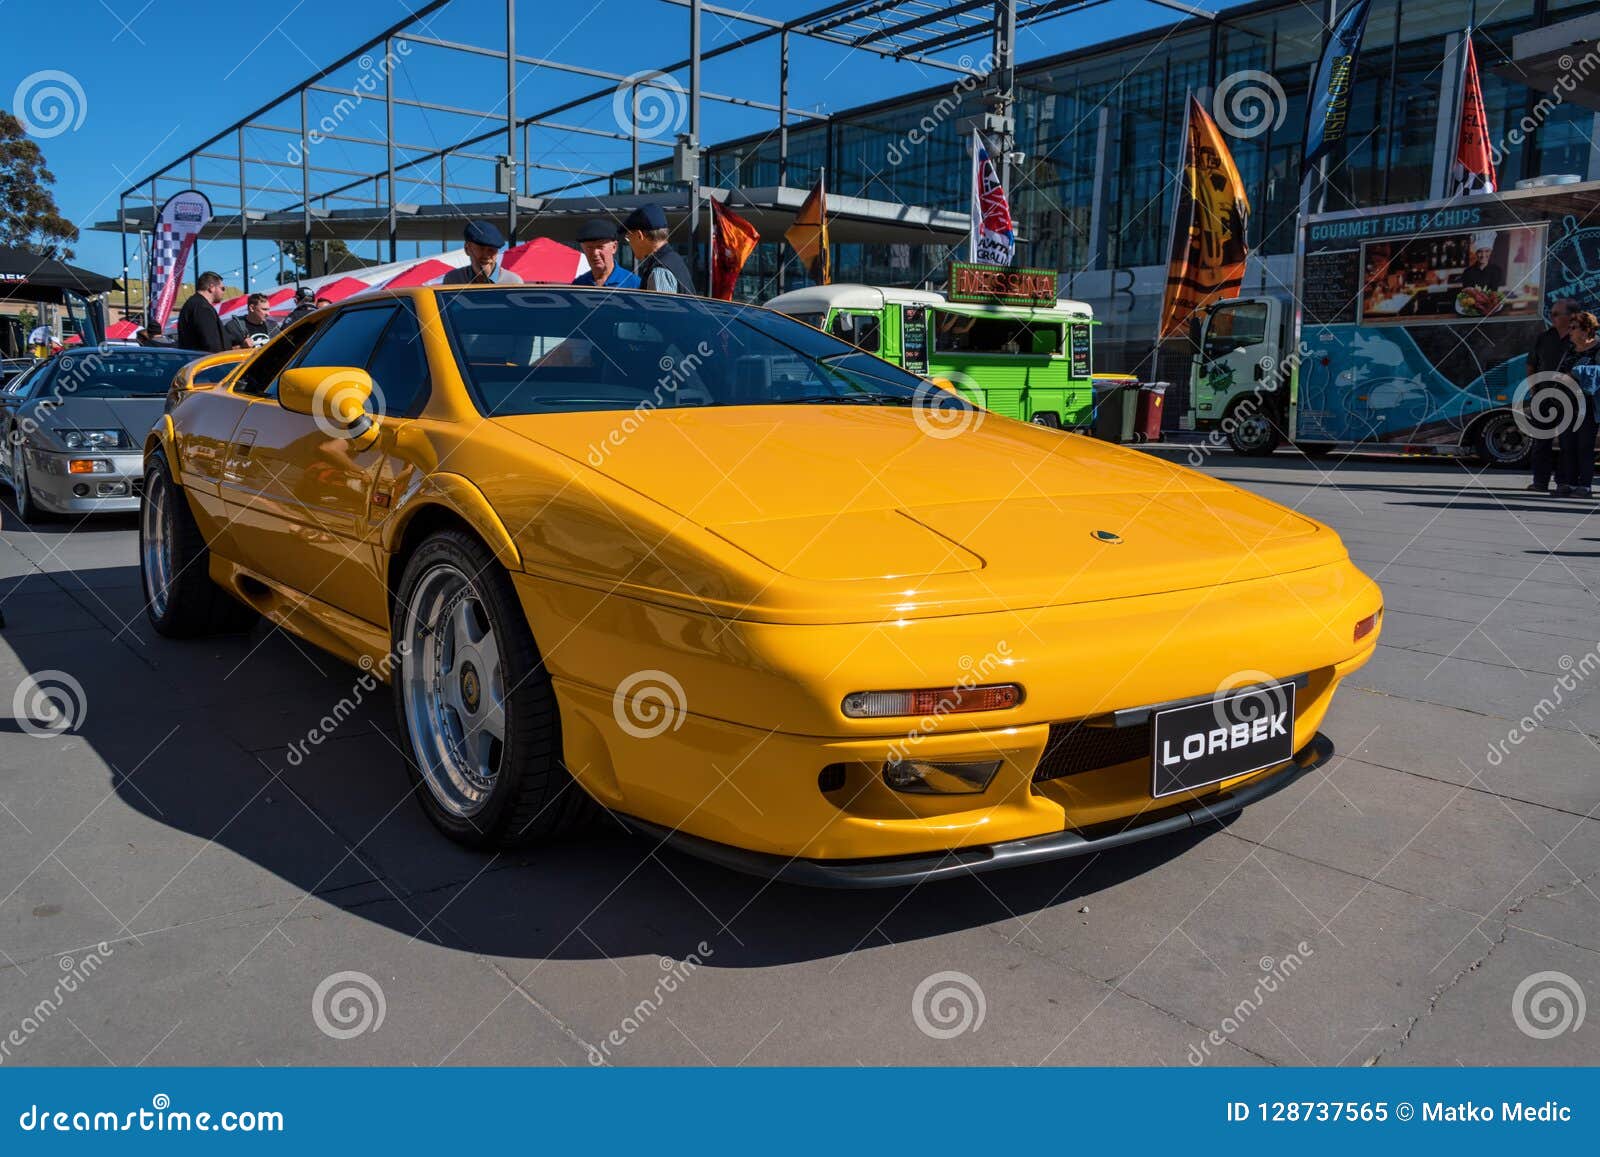 Weinlese Gelbes Lotus Auto Bei Motorclassica Redaktionelles Bild Bild Von Ausstellung Lotos 128737565